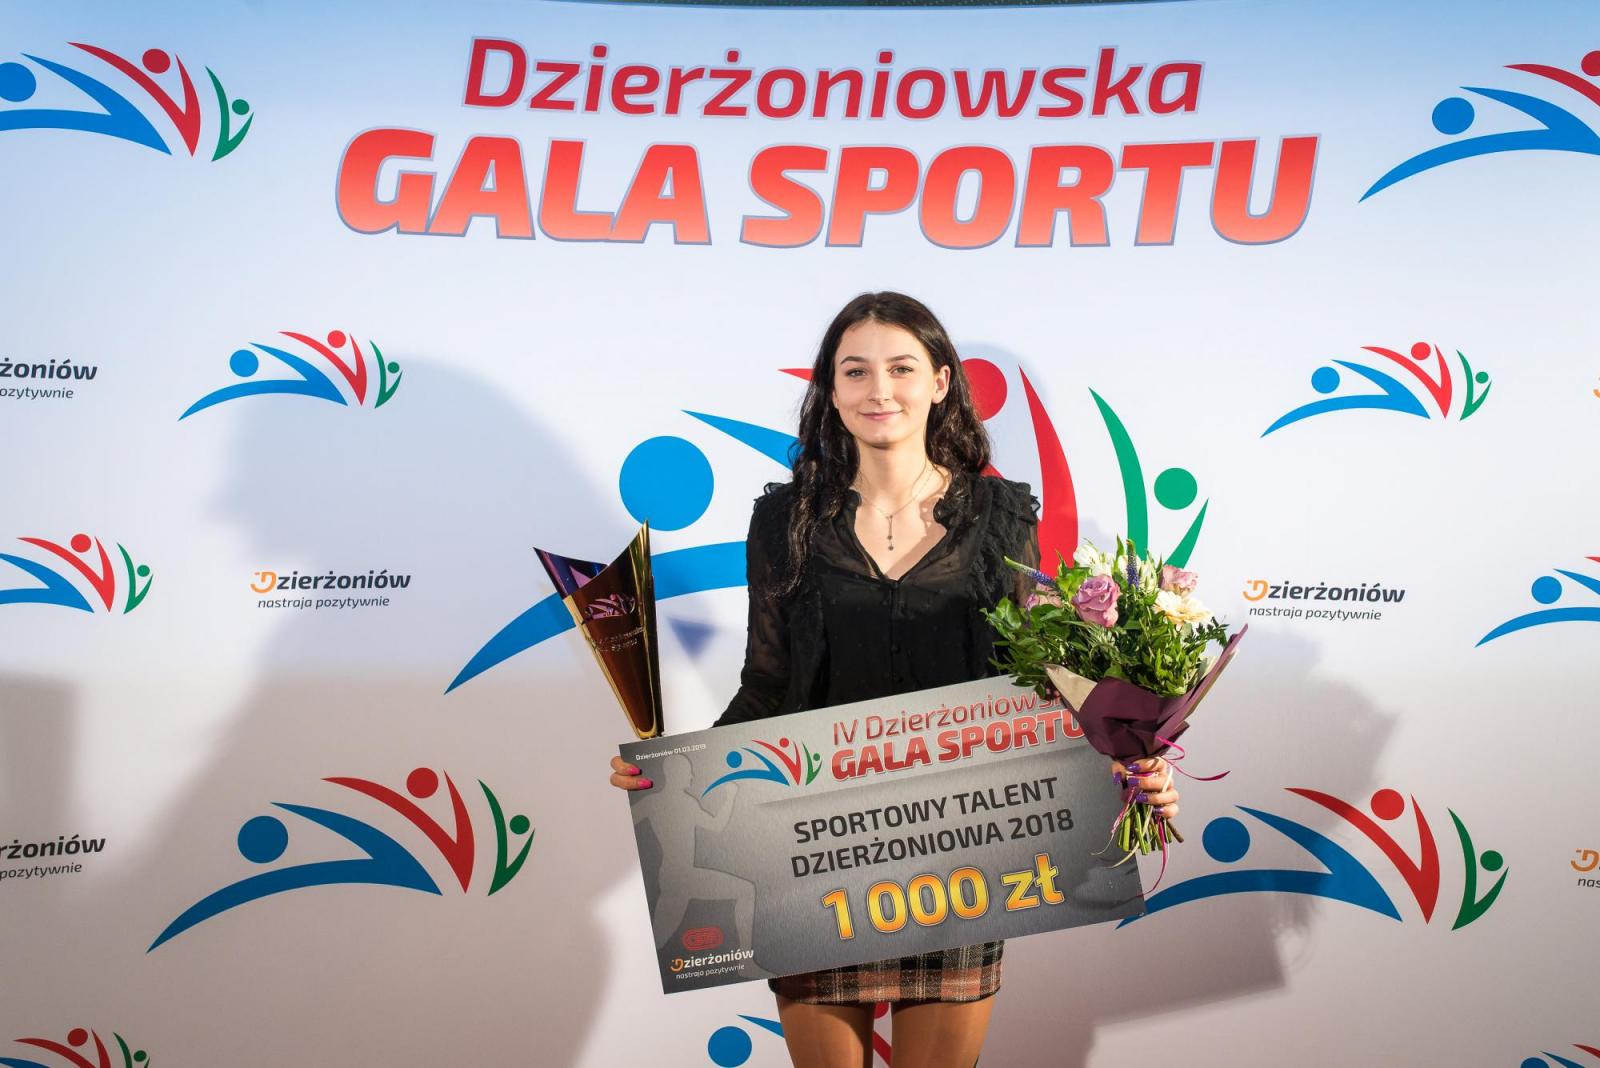 Sportowy talent Dzierżoniowa 2018 - dziewczęta